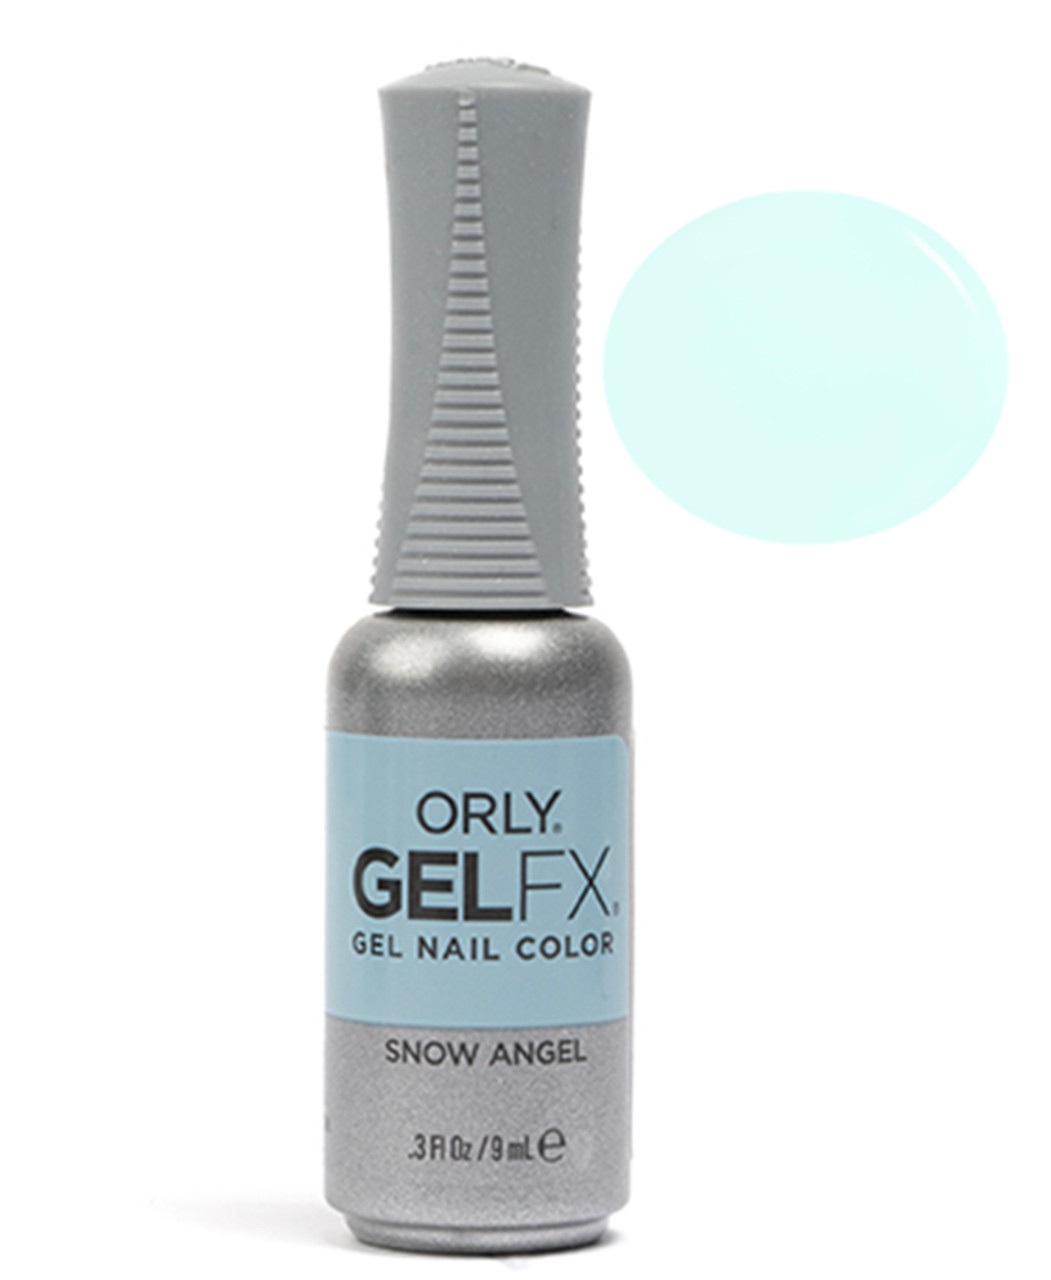 Orly Gel FX Soak-Off Gel Snow Angel - .3 fl oz / 9 ml